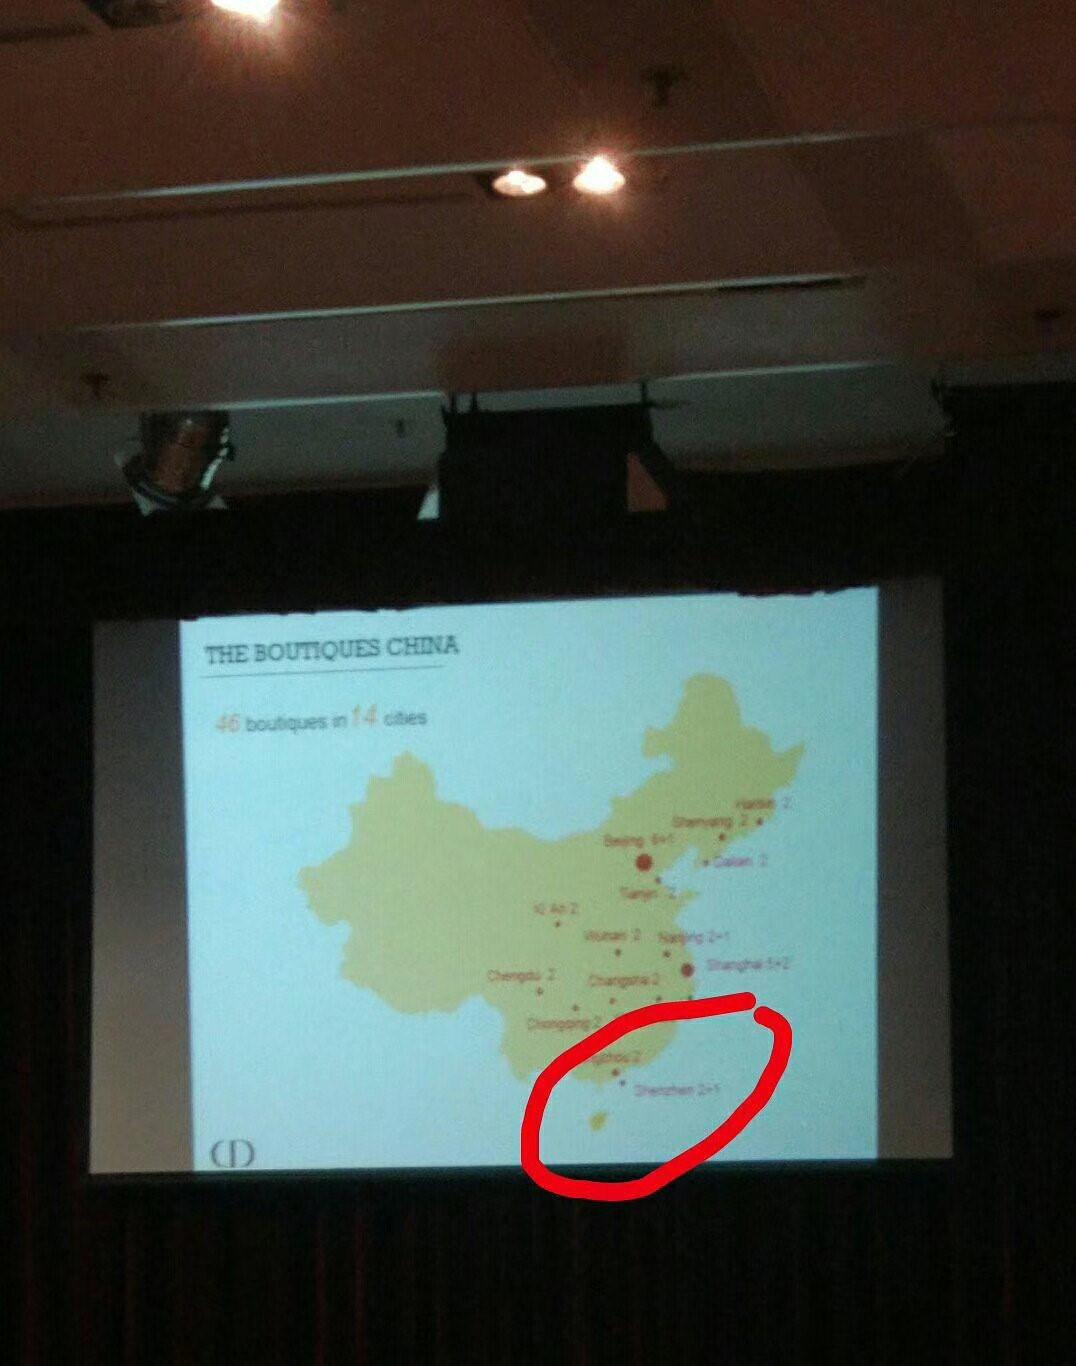 投影简报上，中国地图并未标示台湾。